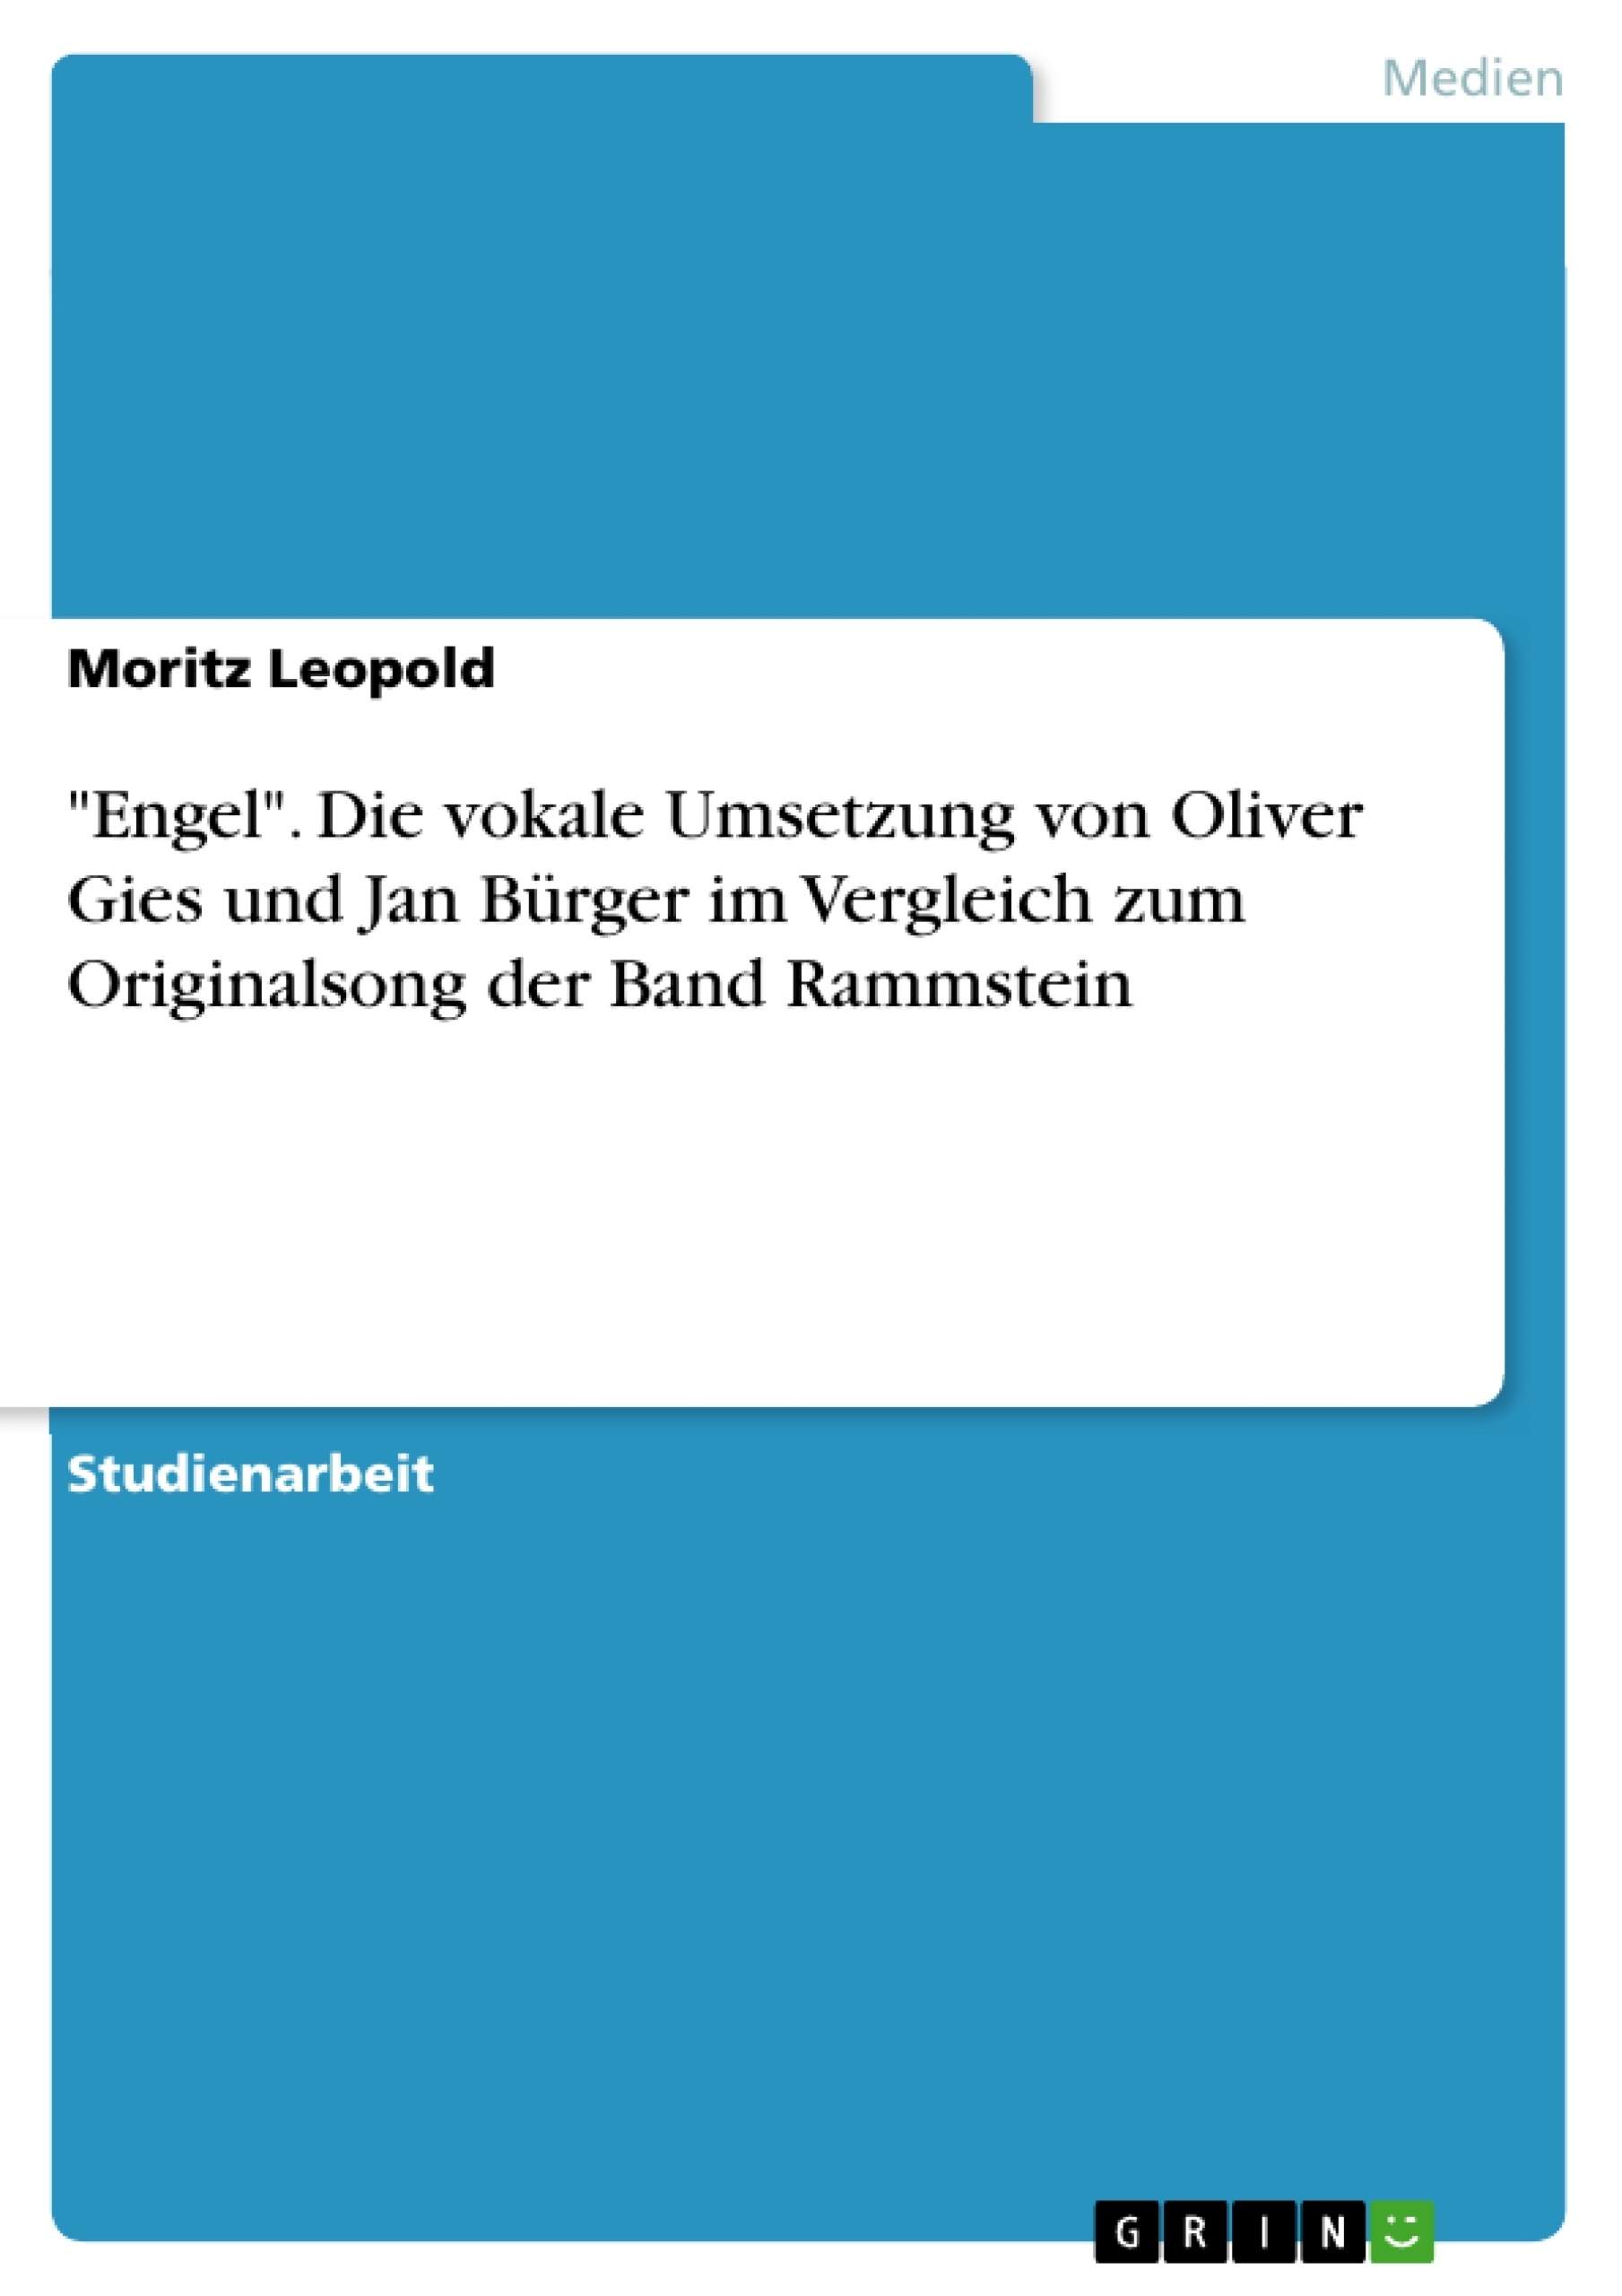 Título: "Engel". Die vokale Umsetzung von Oliver Gies und Jan Bürger im Vergleich zum Originalsong der Band Rammstein